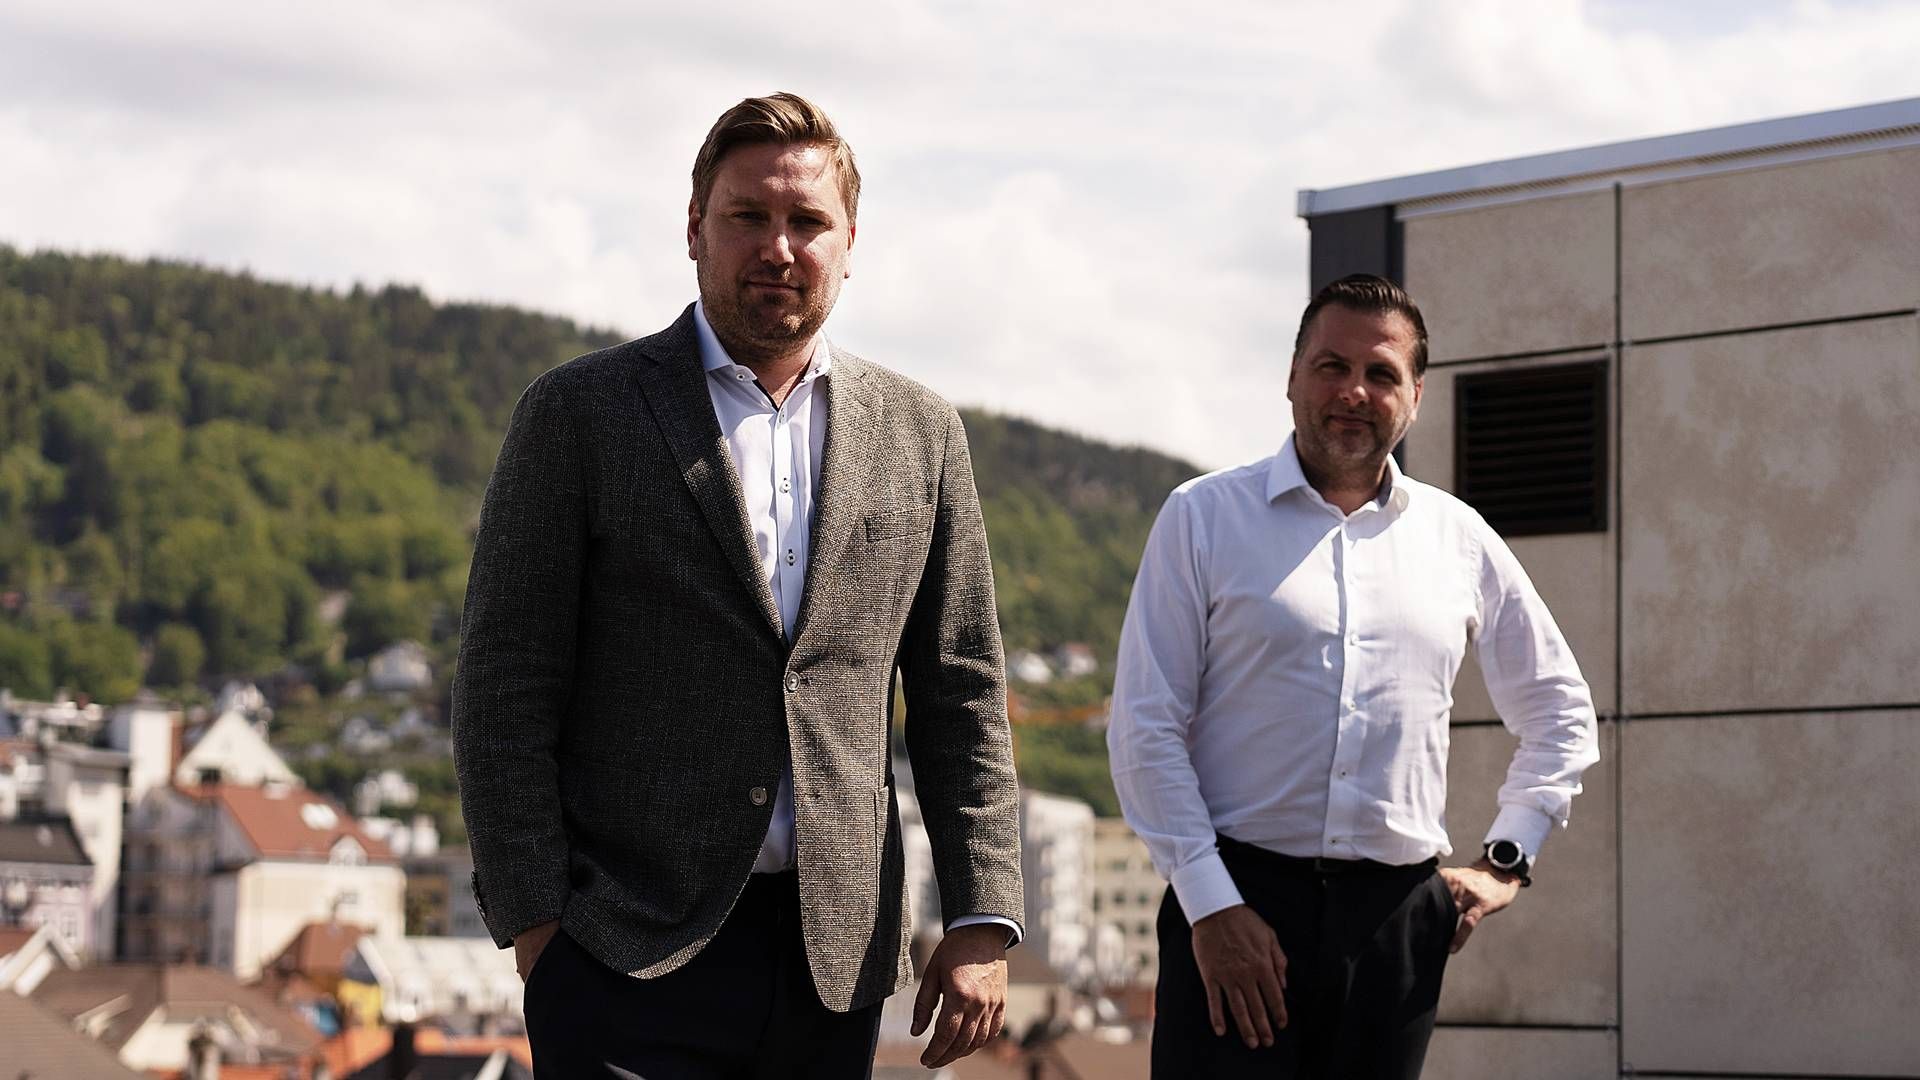 Leveranceansvarlig Jan Georg Lehmann fra it-selskabet Knowit (til højre) siger, at man vil bruge ny kontrakt som afsæt til at udfordre de etablerede spillere på det norske marked.